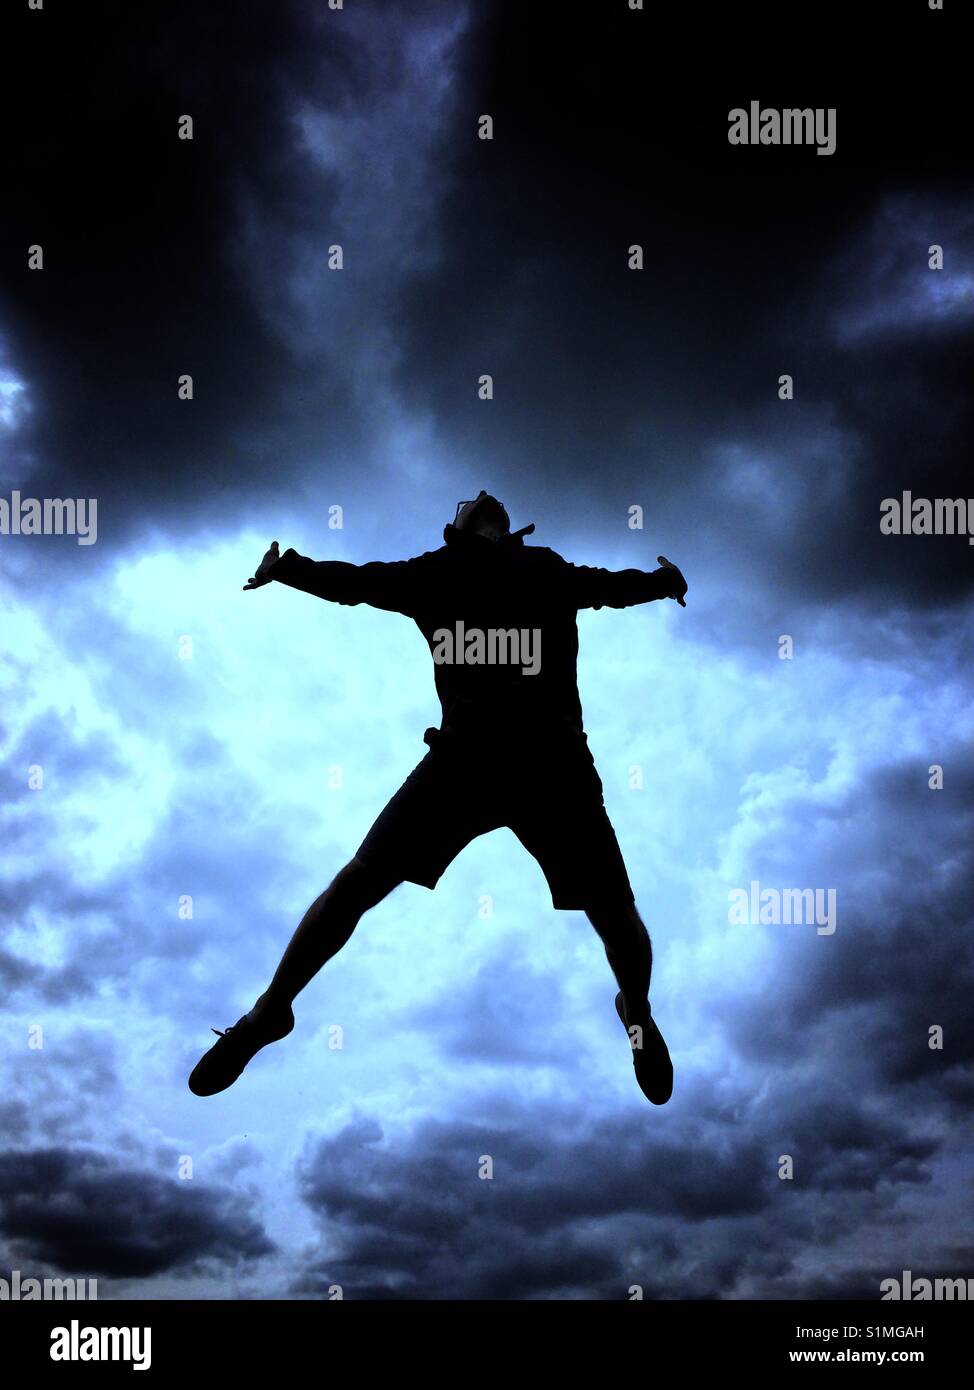 La silhouette di un uomo saltare in aria in alto con un blu brillante, elettrico e tempestoso cielo dietro. Foto Stock